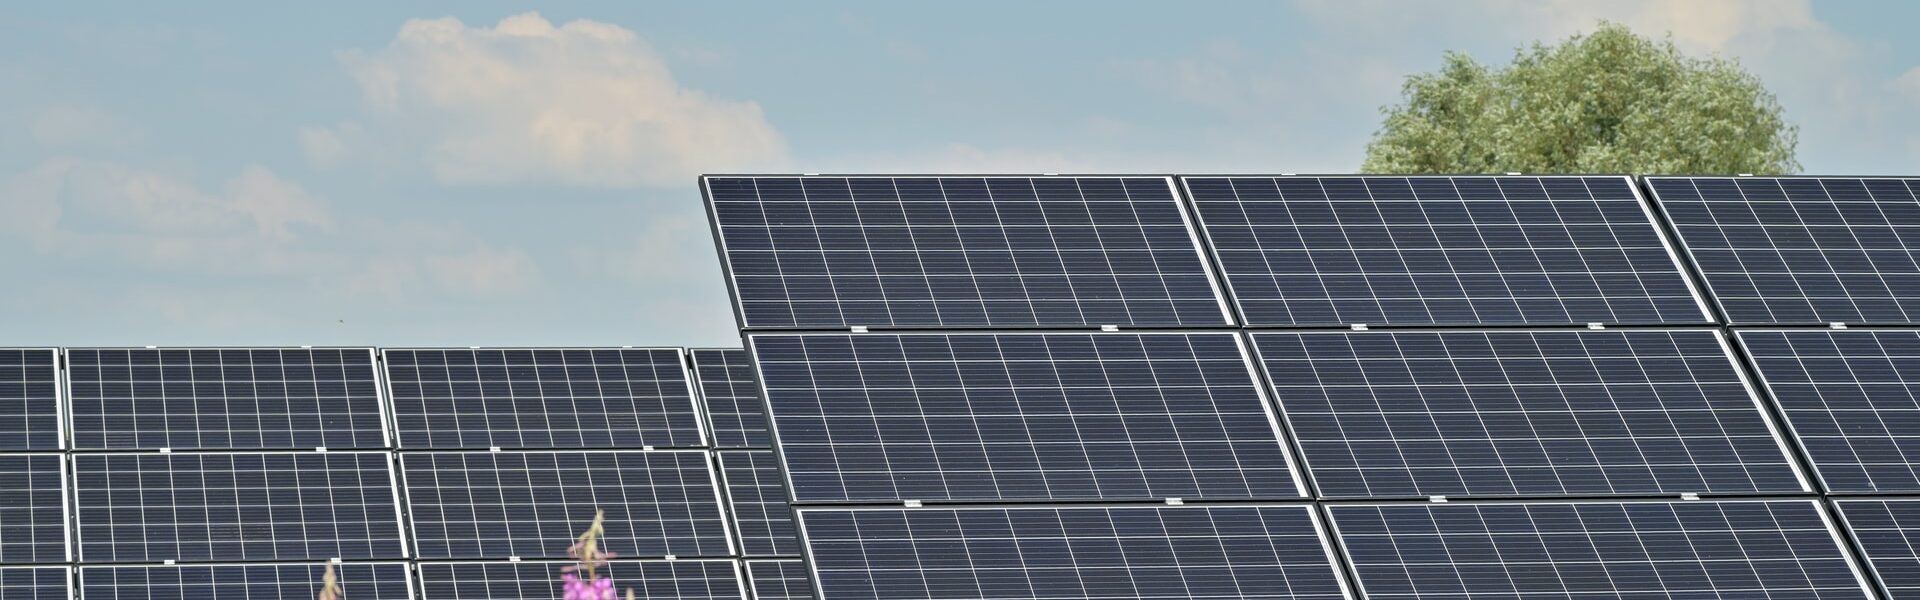 placas solares - Principais dúvidas sobre franquia de energia solar e suas respostas